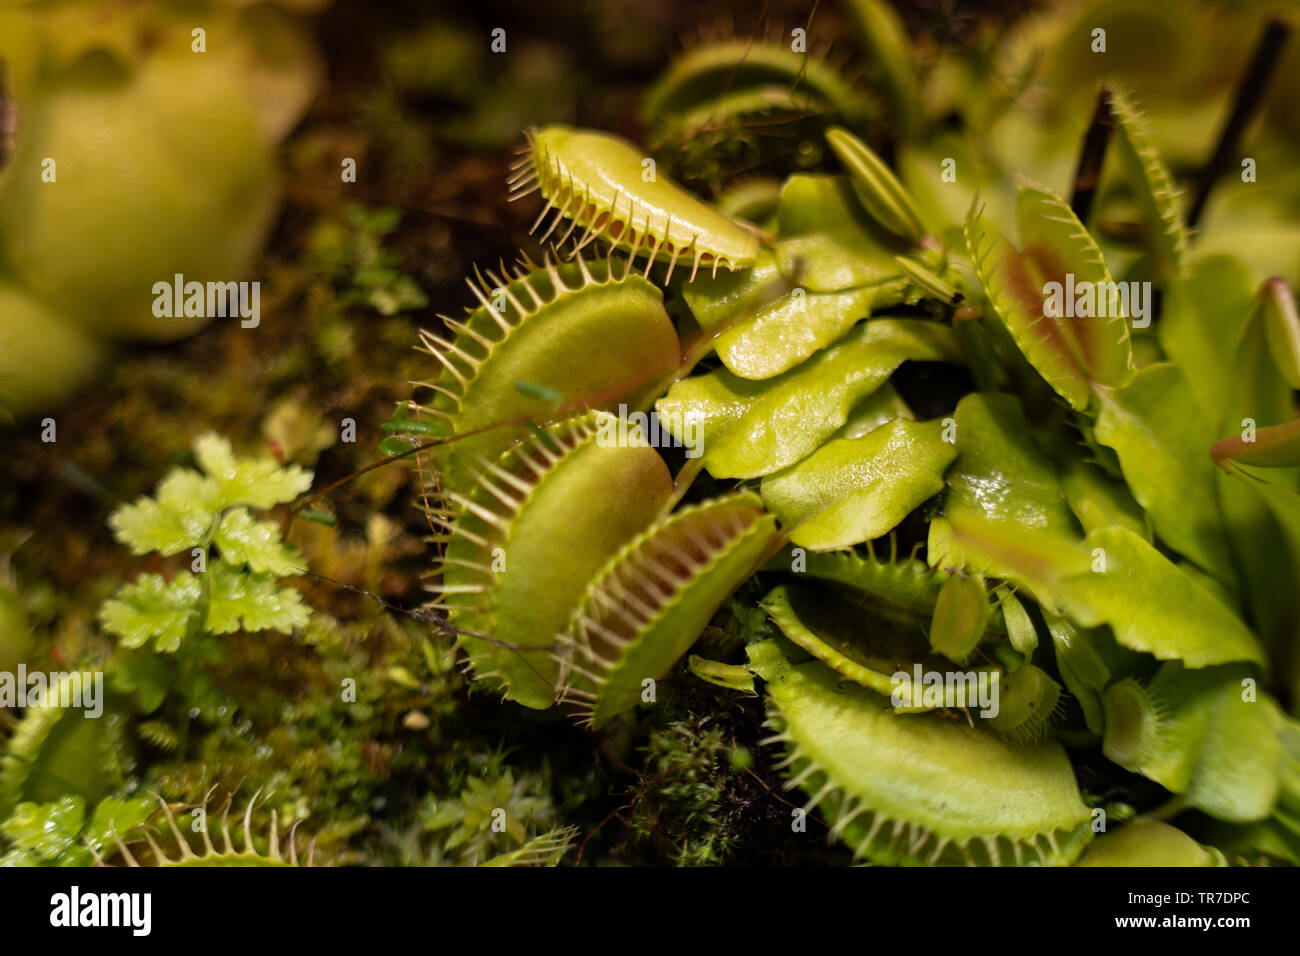 La più famosa delle piante carnivore è flytrap dionea Dionaea muscipula o Venus flytrap. Foto Stock